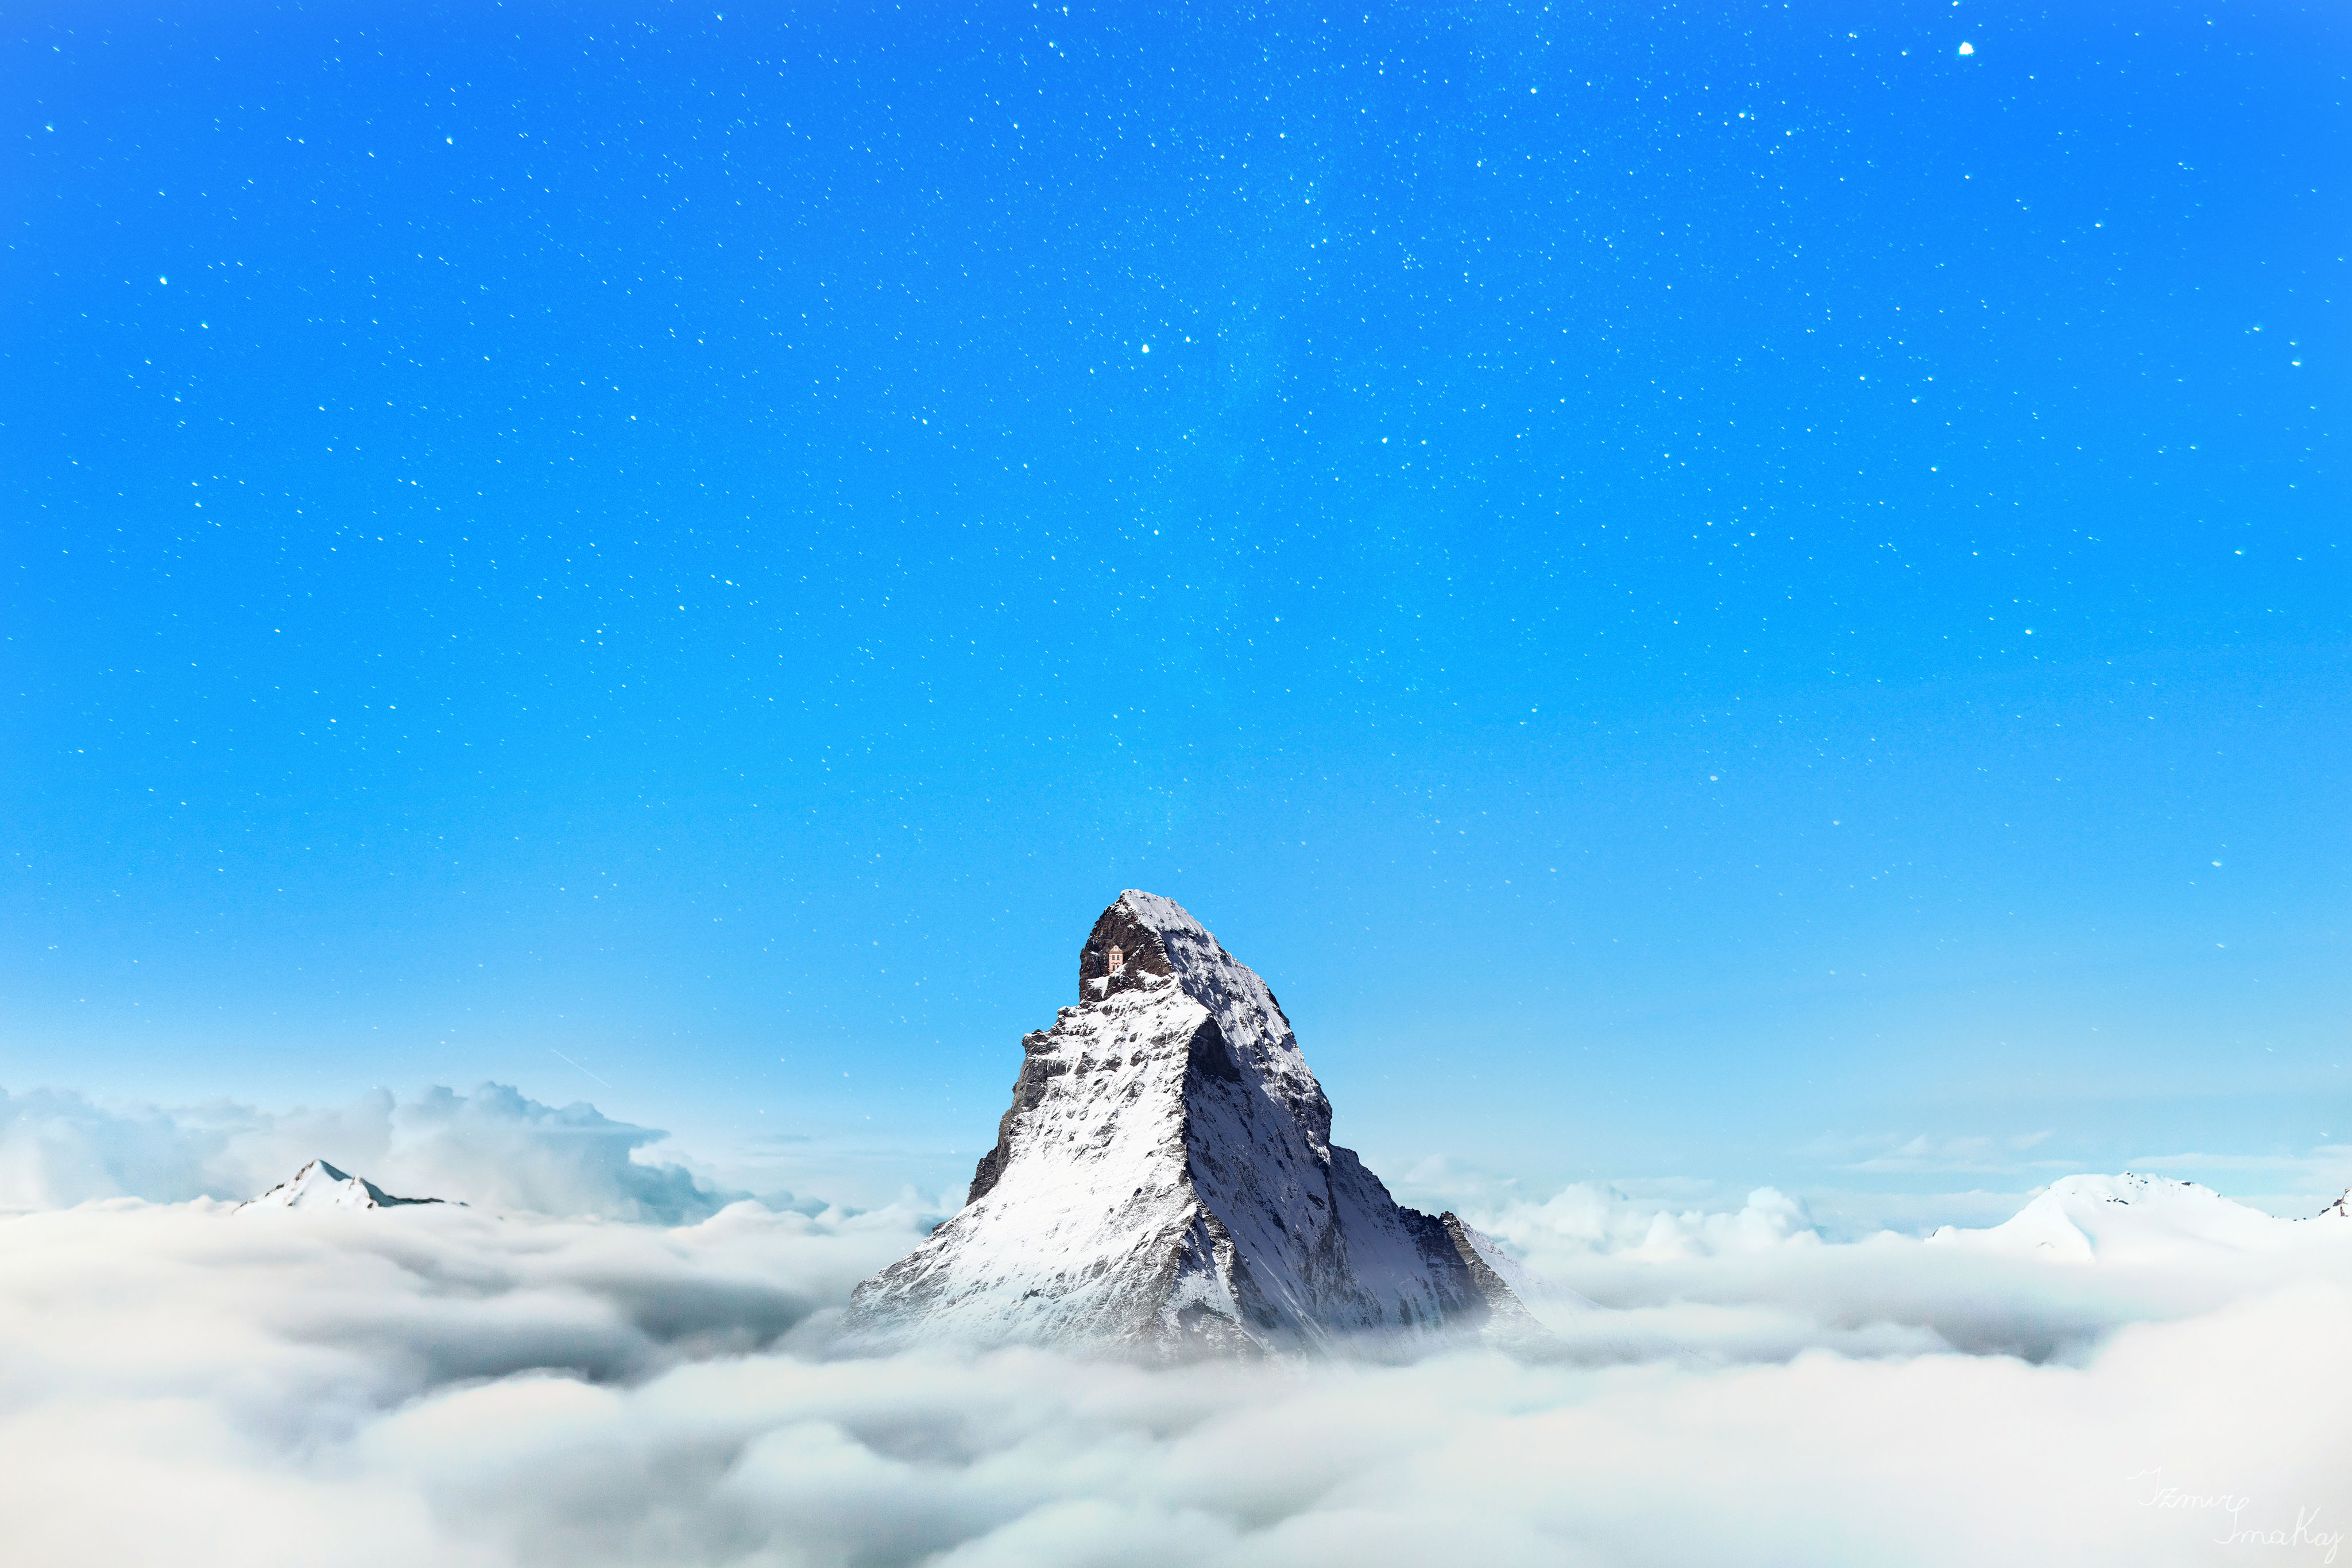 General 4096x2731 landscape clouds mountains sky nature Matterhorn Switzerland